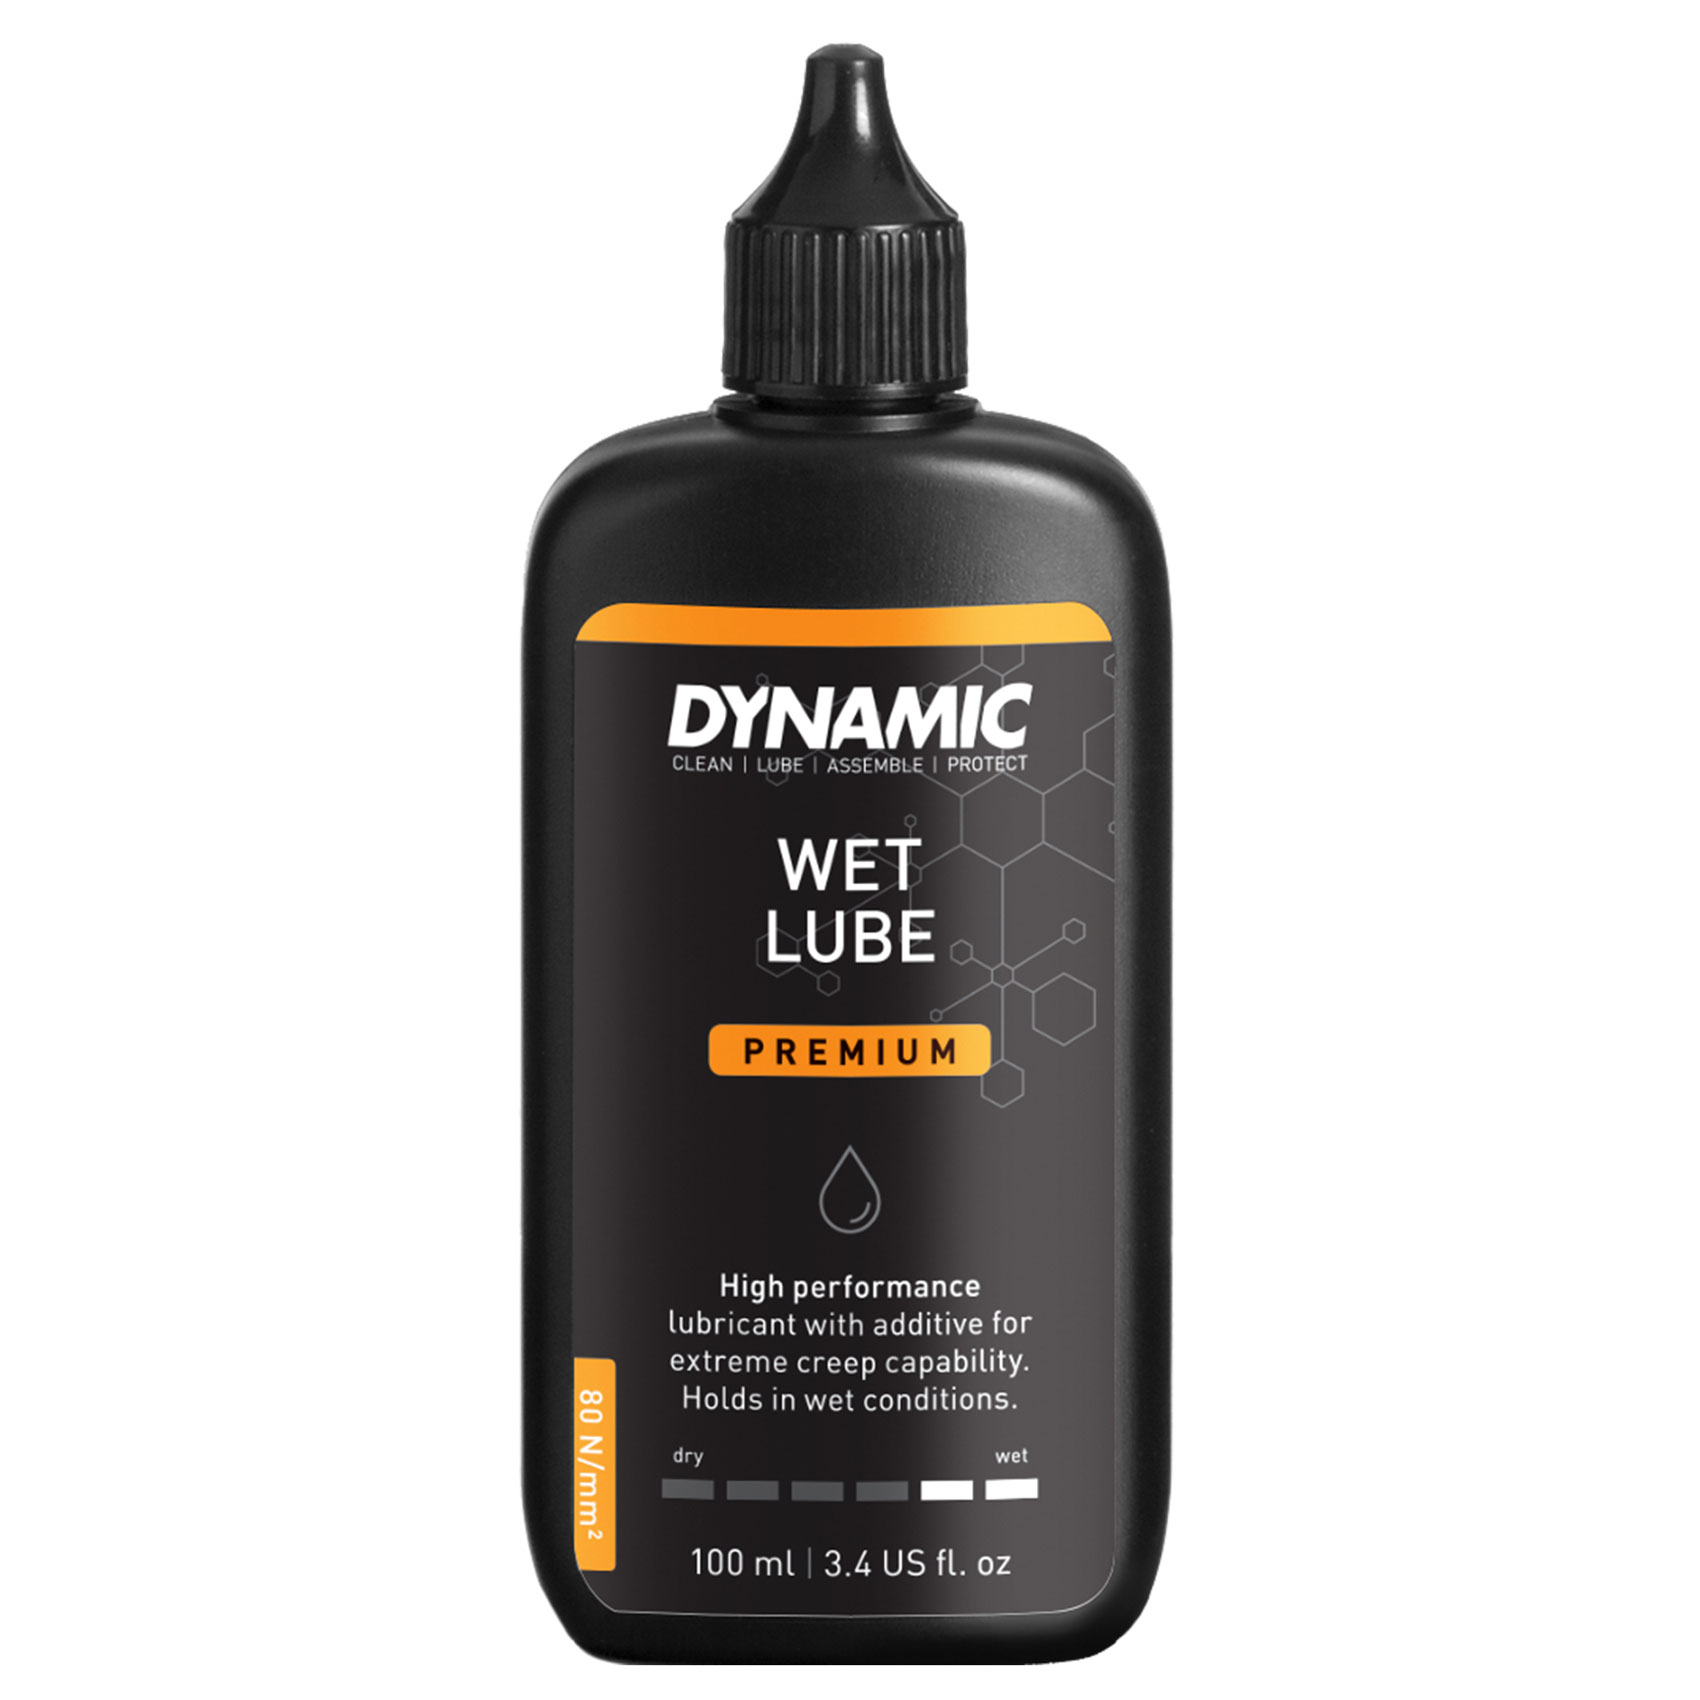 Productfoto van Dynamic Wet Lube Premium - Kettingsmeermiddel - 100ml